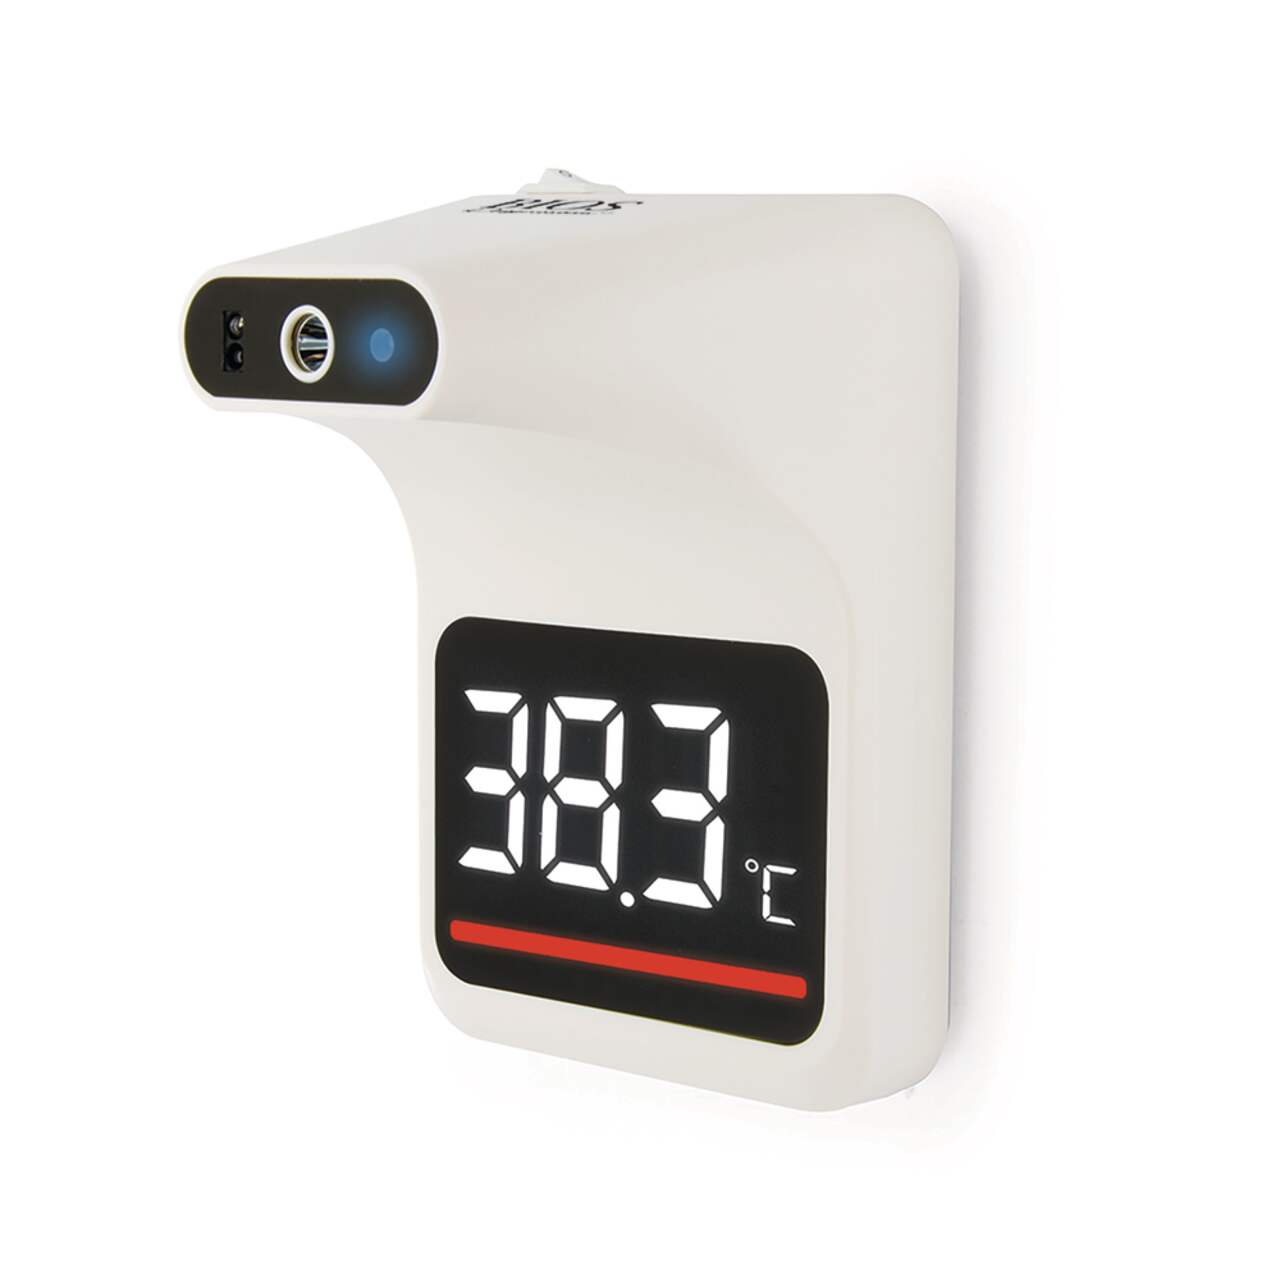 Thermomètre d'intérieur/ d'extérieur sans fil – BIOS Medical